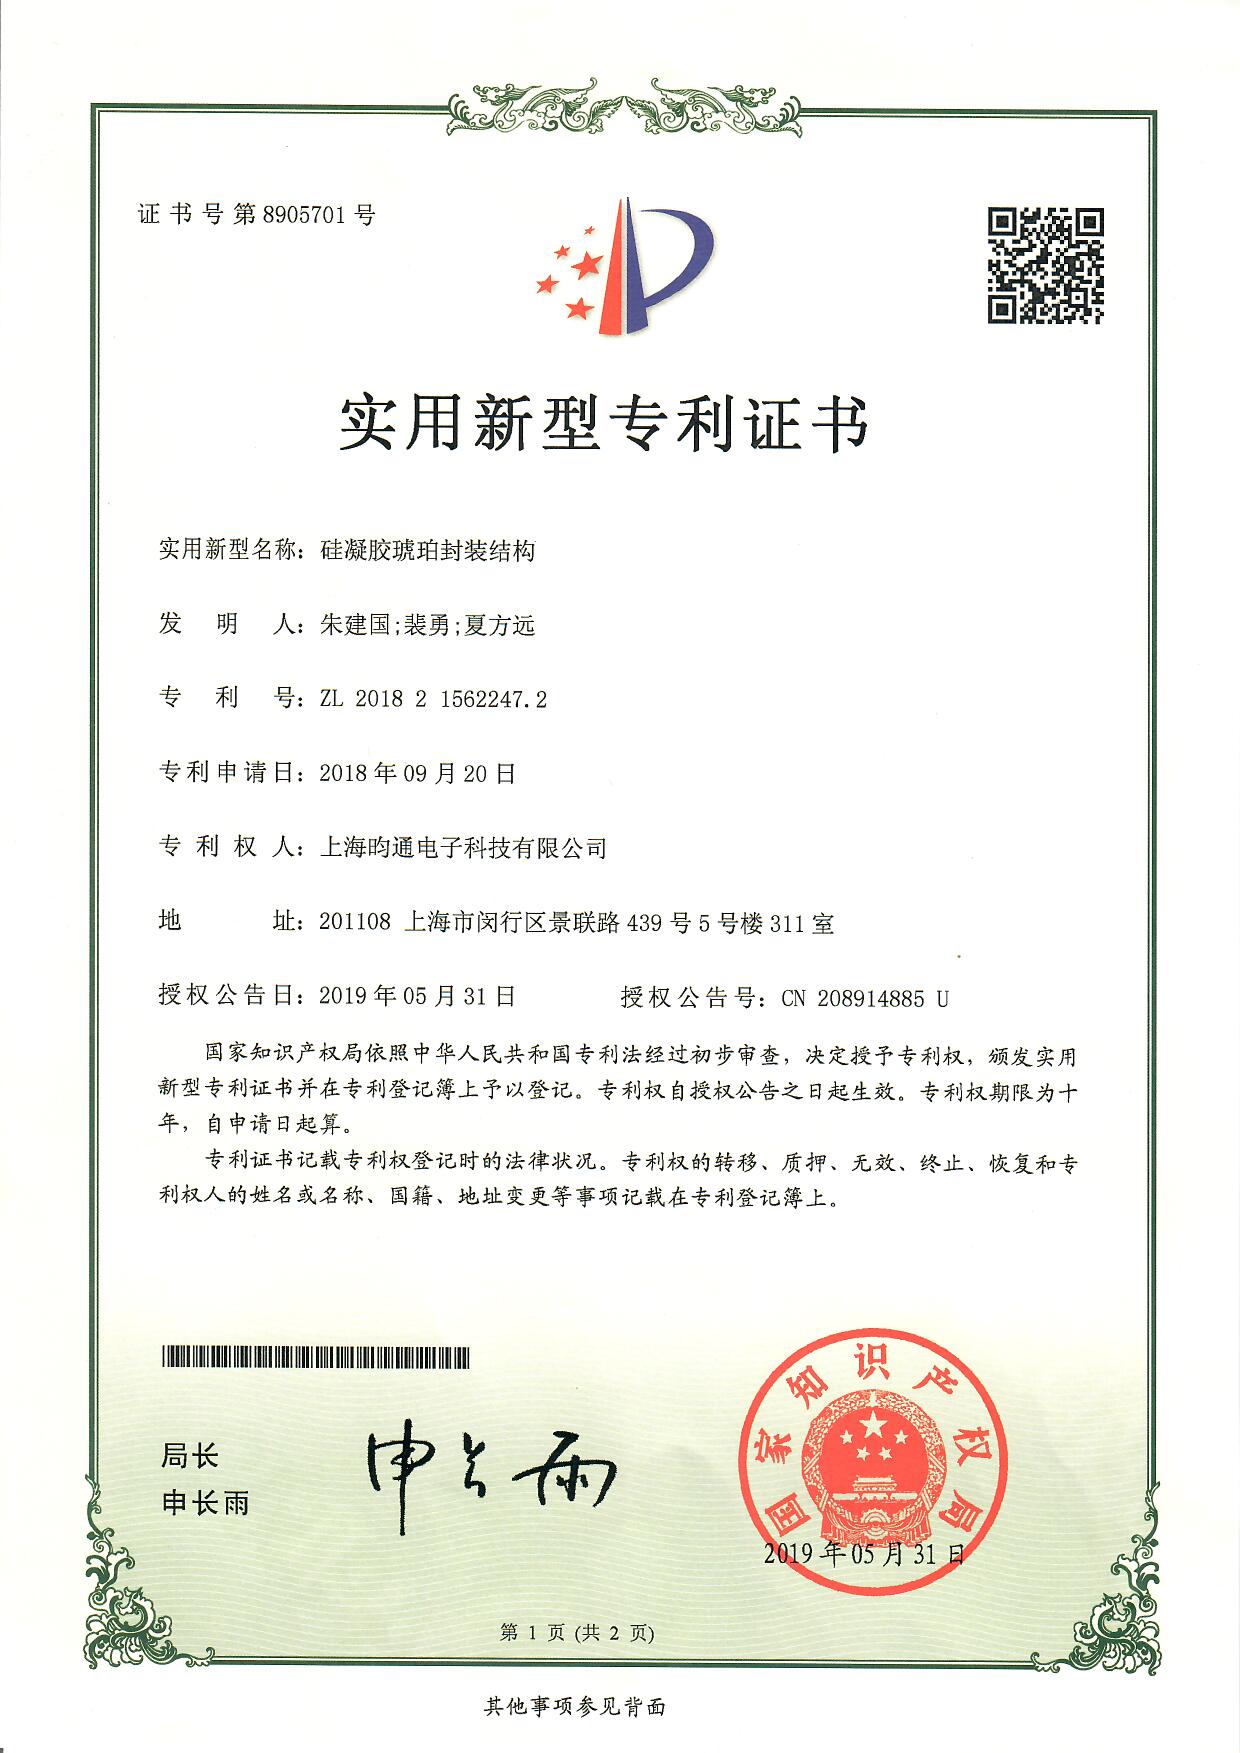 硅凝胶琥珀封装结构专利证书